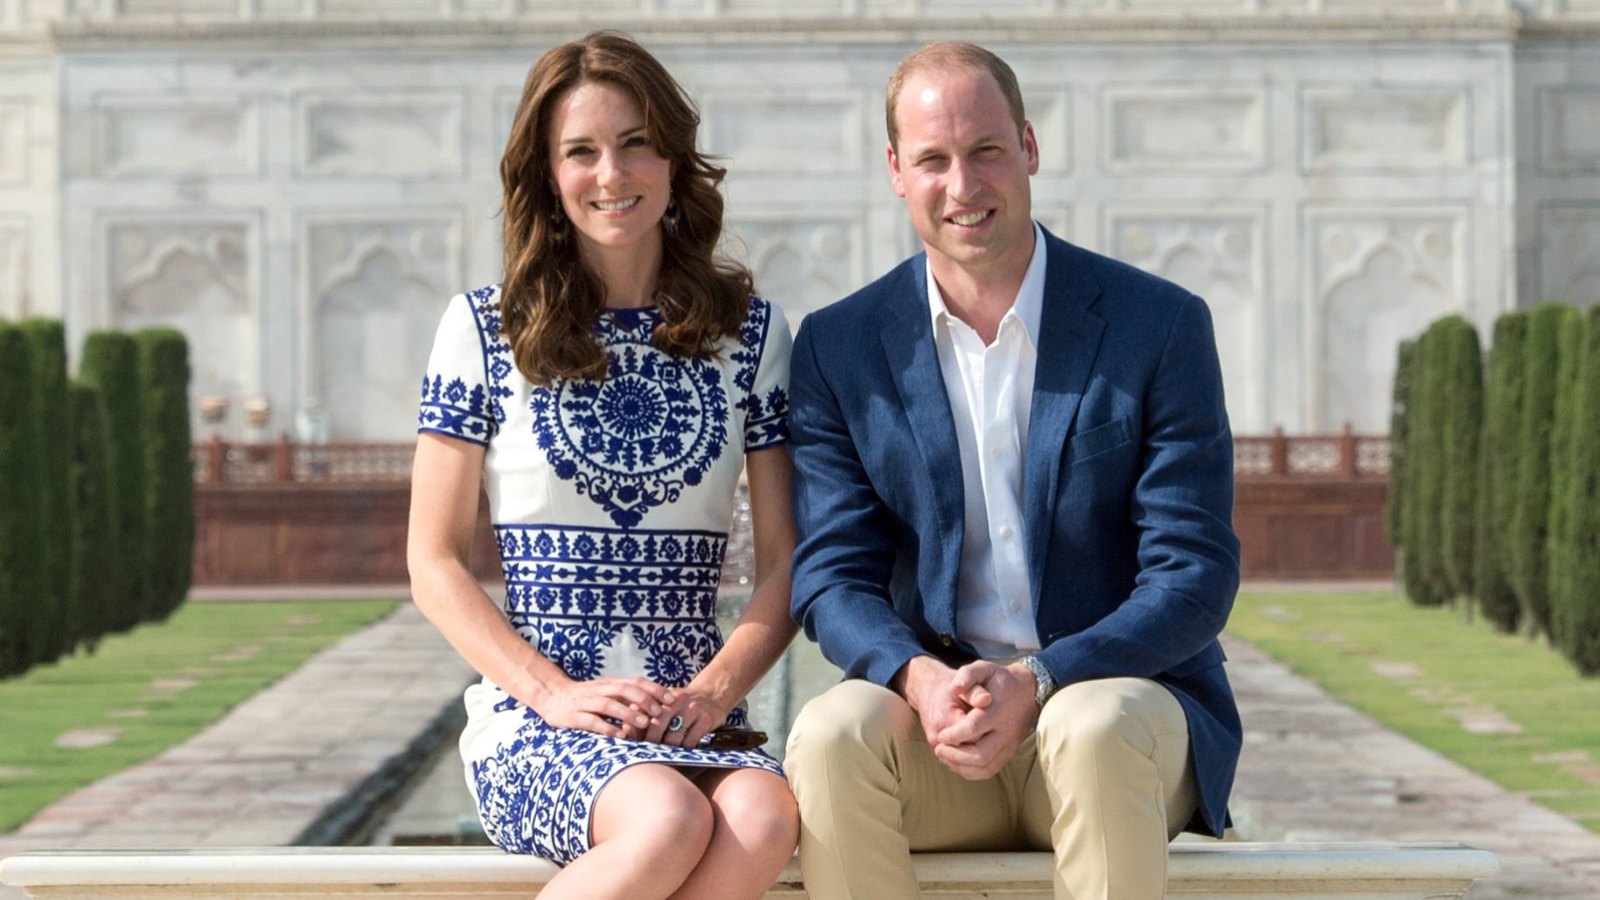 Princess Kate & Prince William